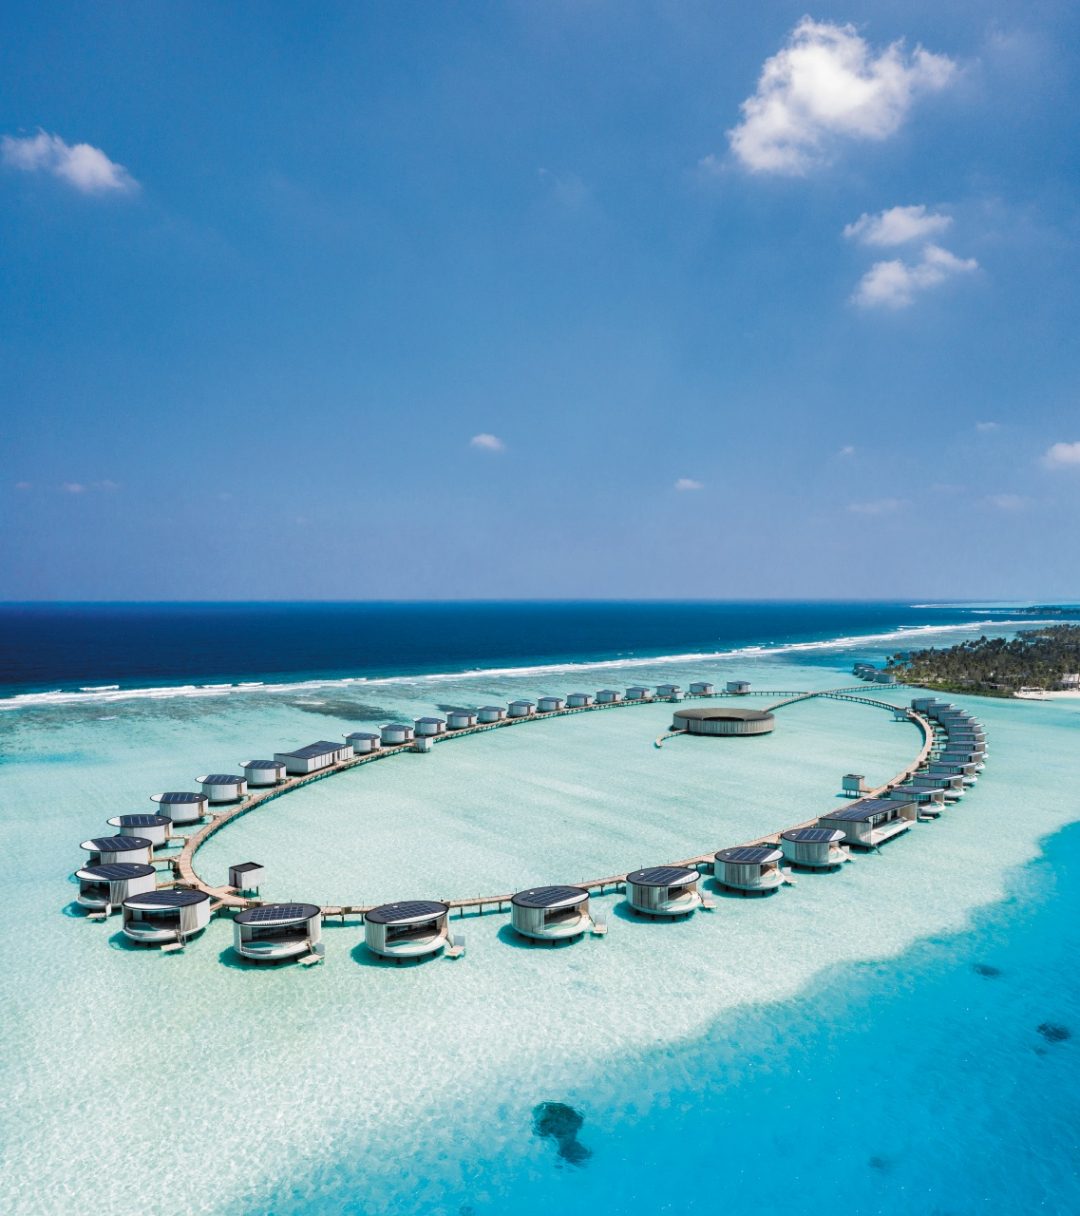 Maldive: vacanze da sogno pensando al futuro del pianeta